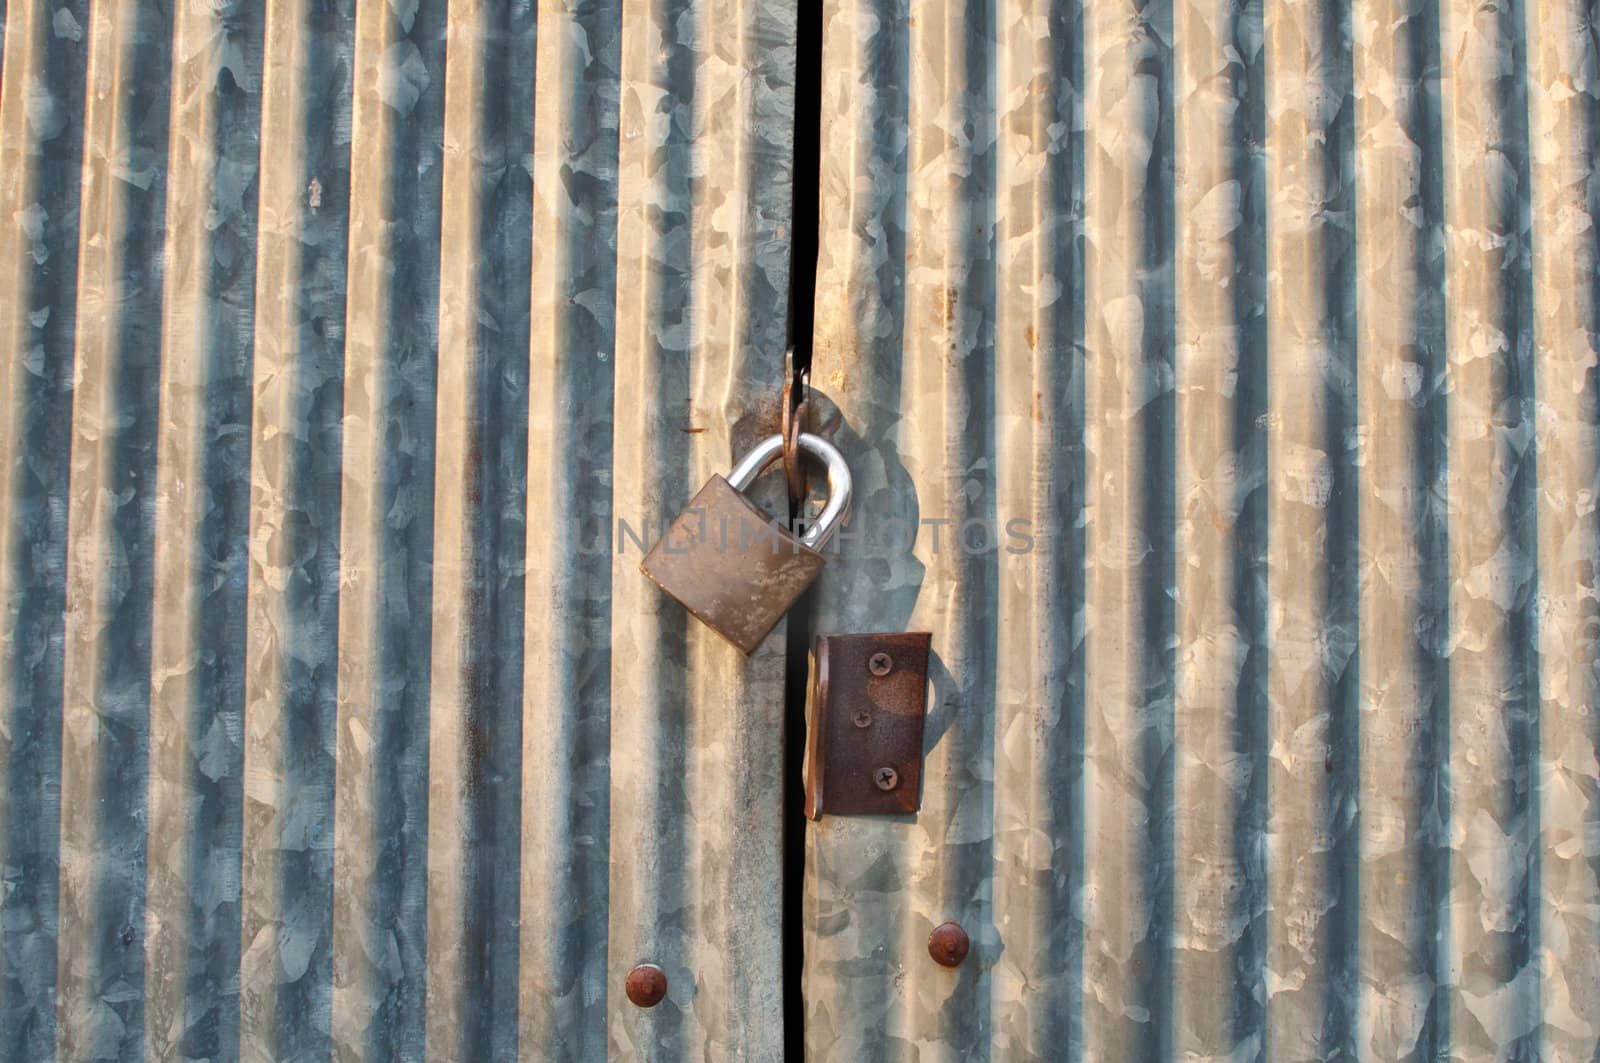 Closed wave metal door with metal lock